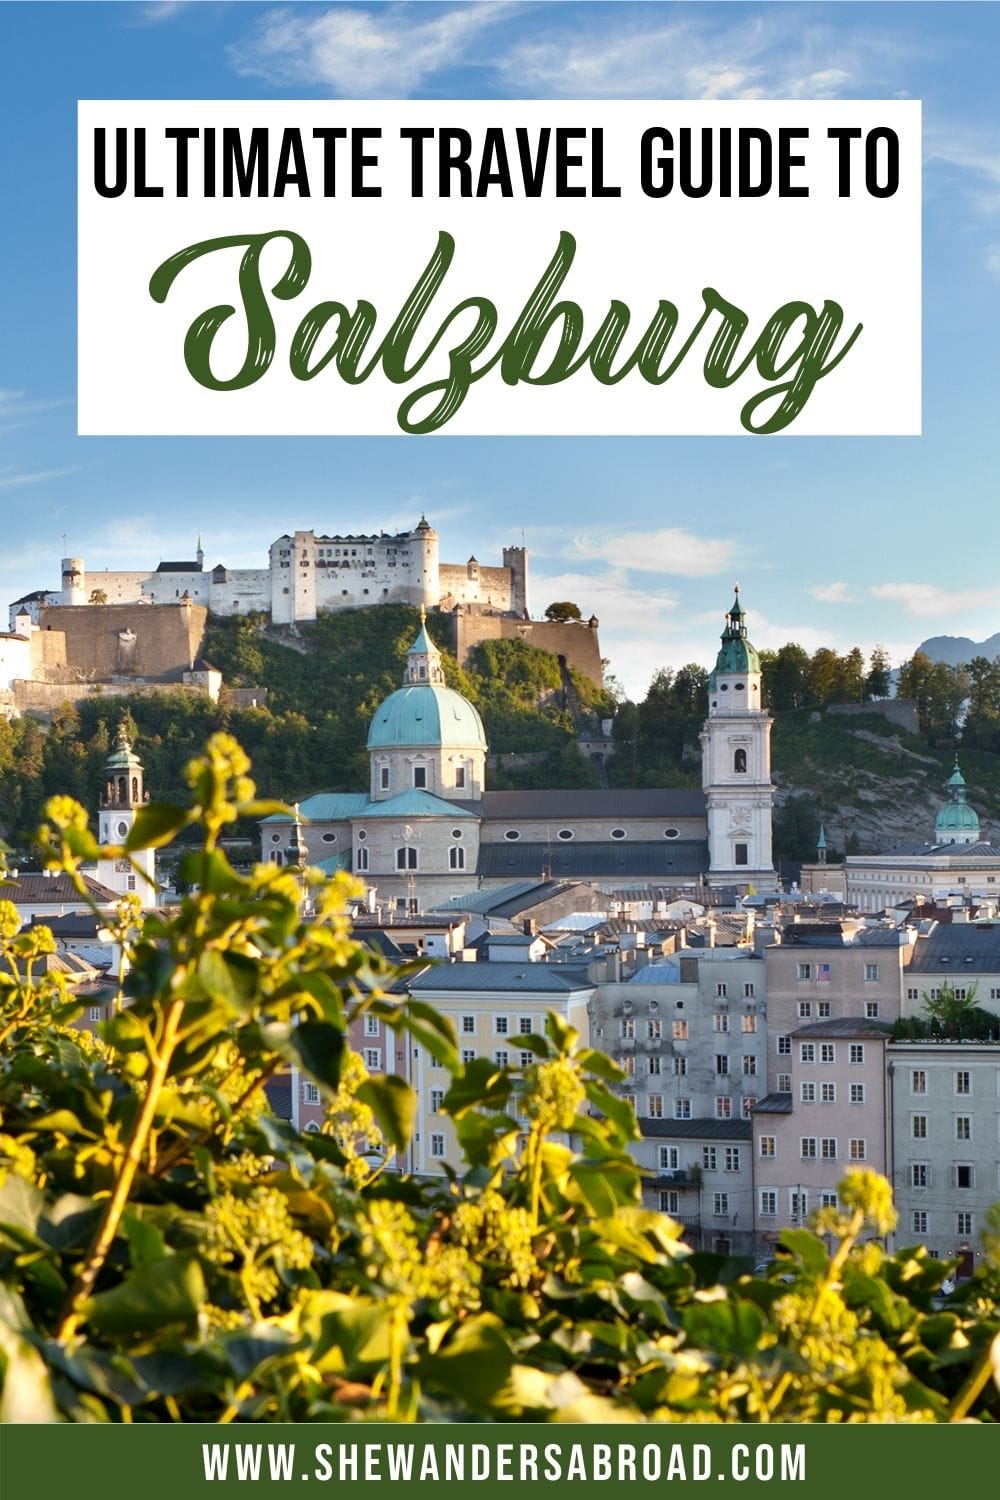 オーストリア、ザルツブルクで一日を過ごすにはどうすればよいですか